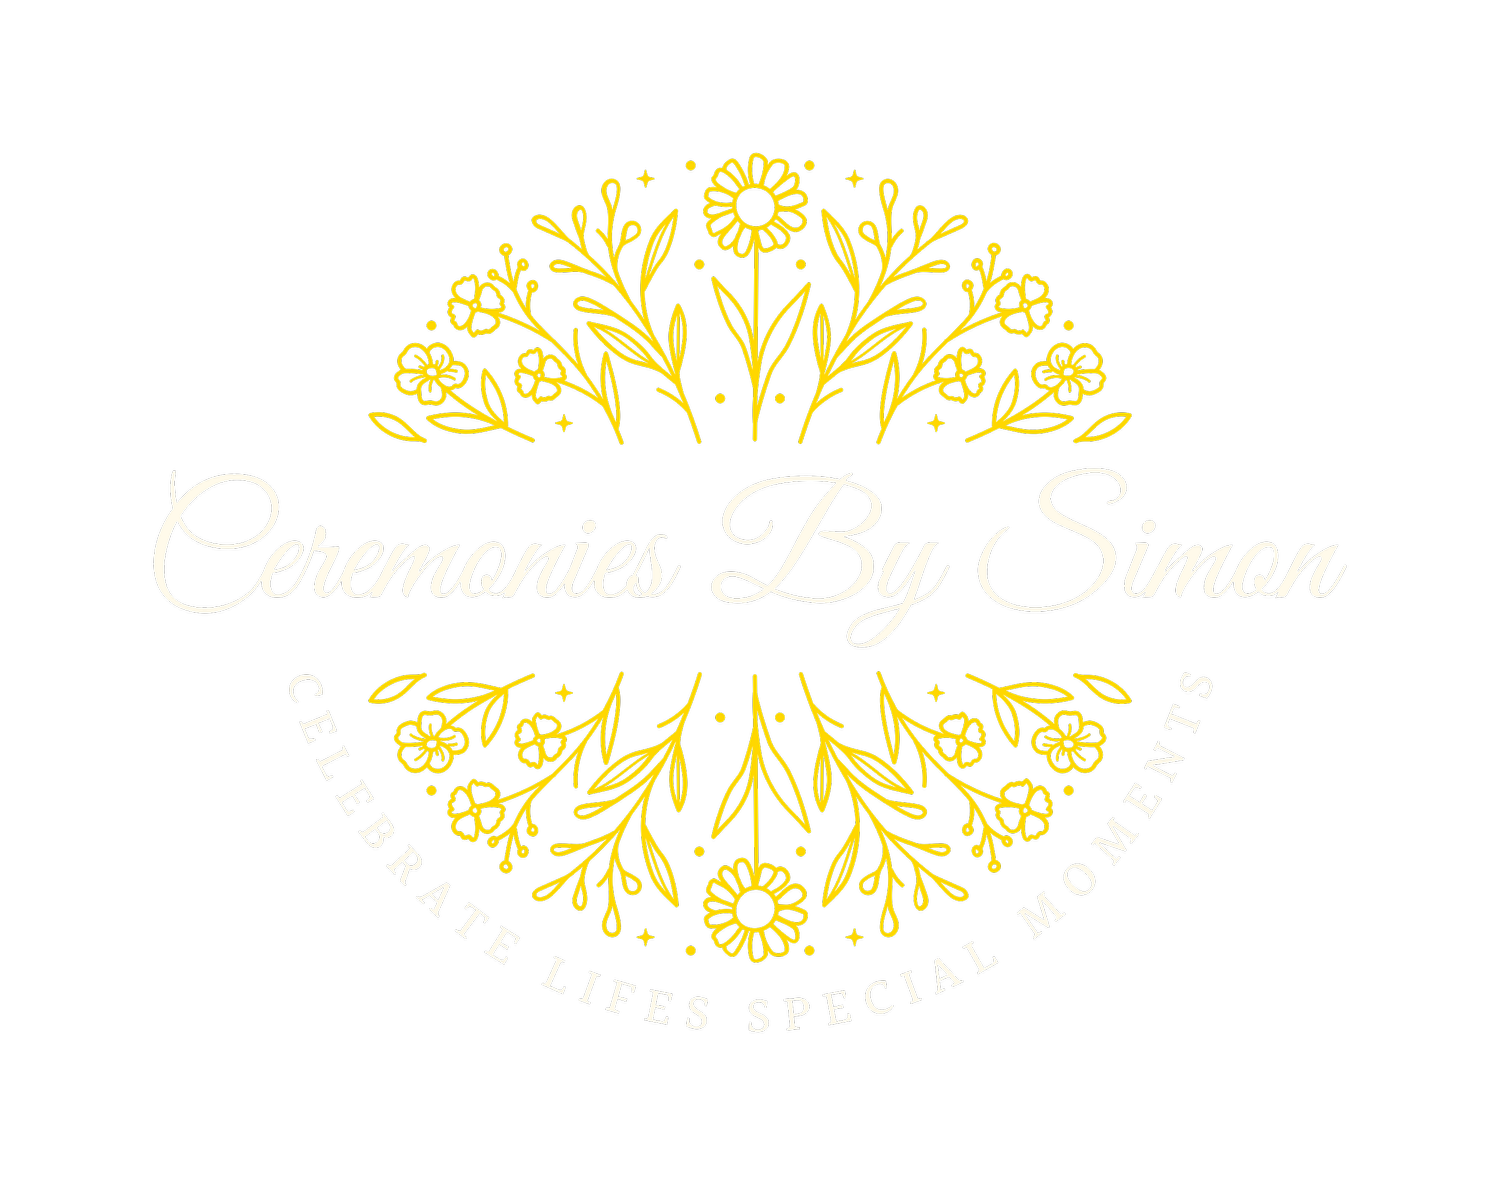 Ceremonies by Simon